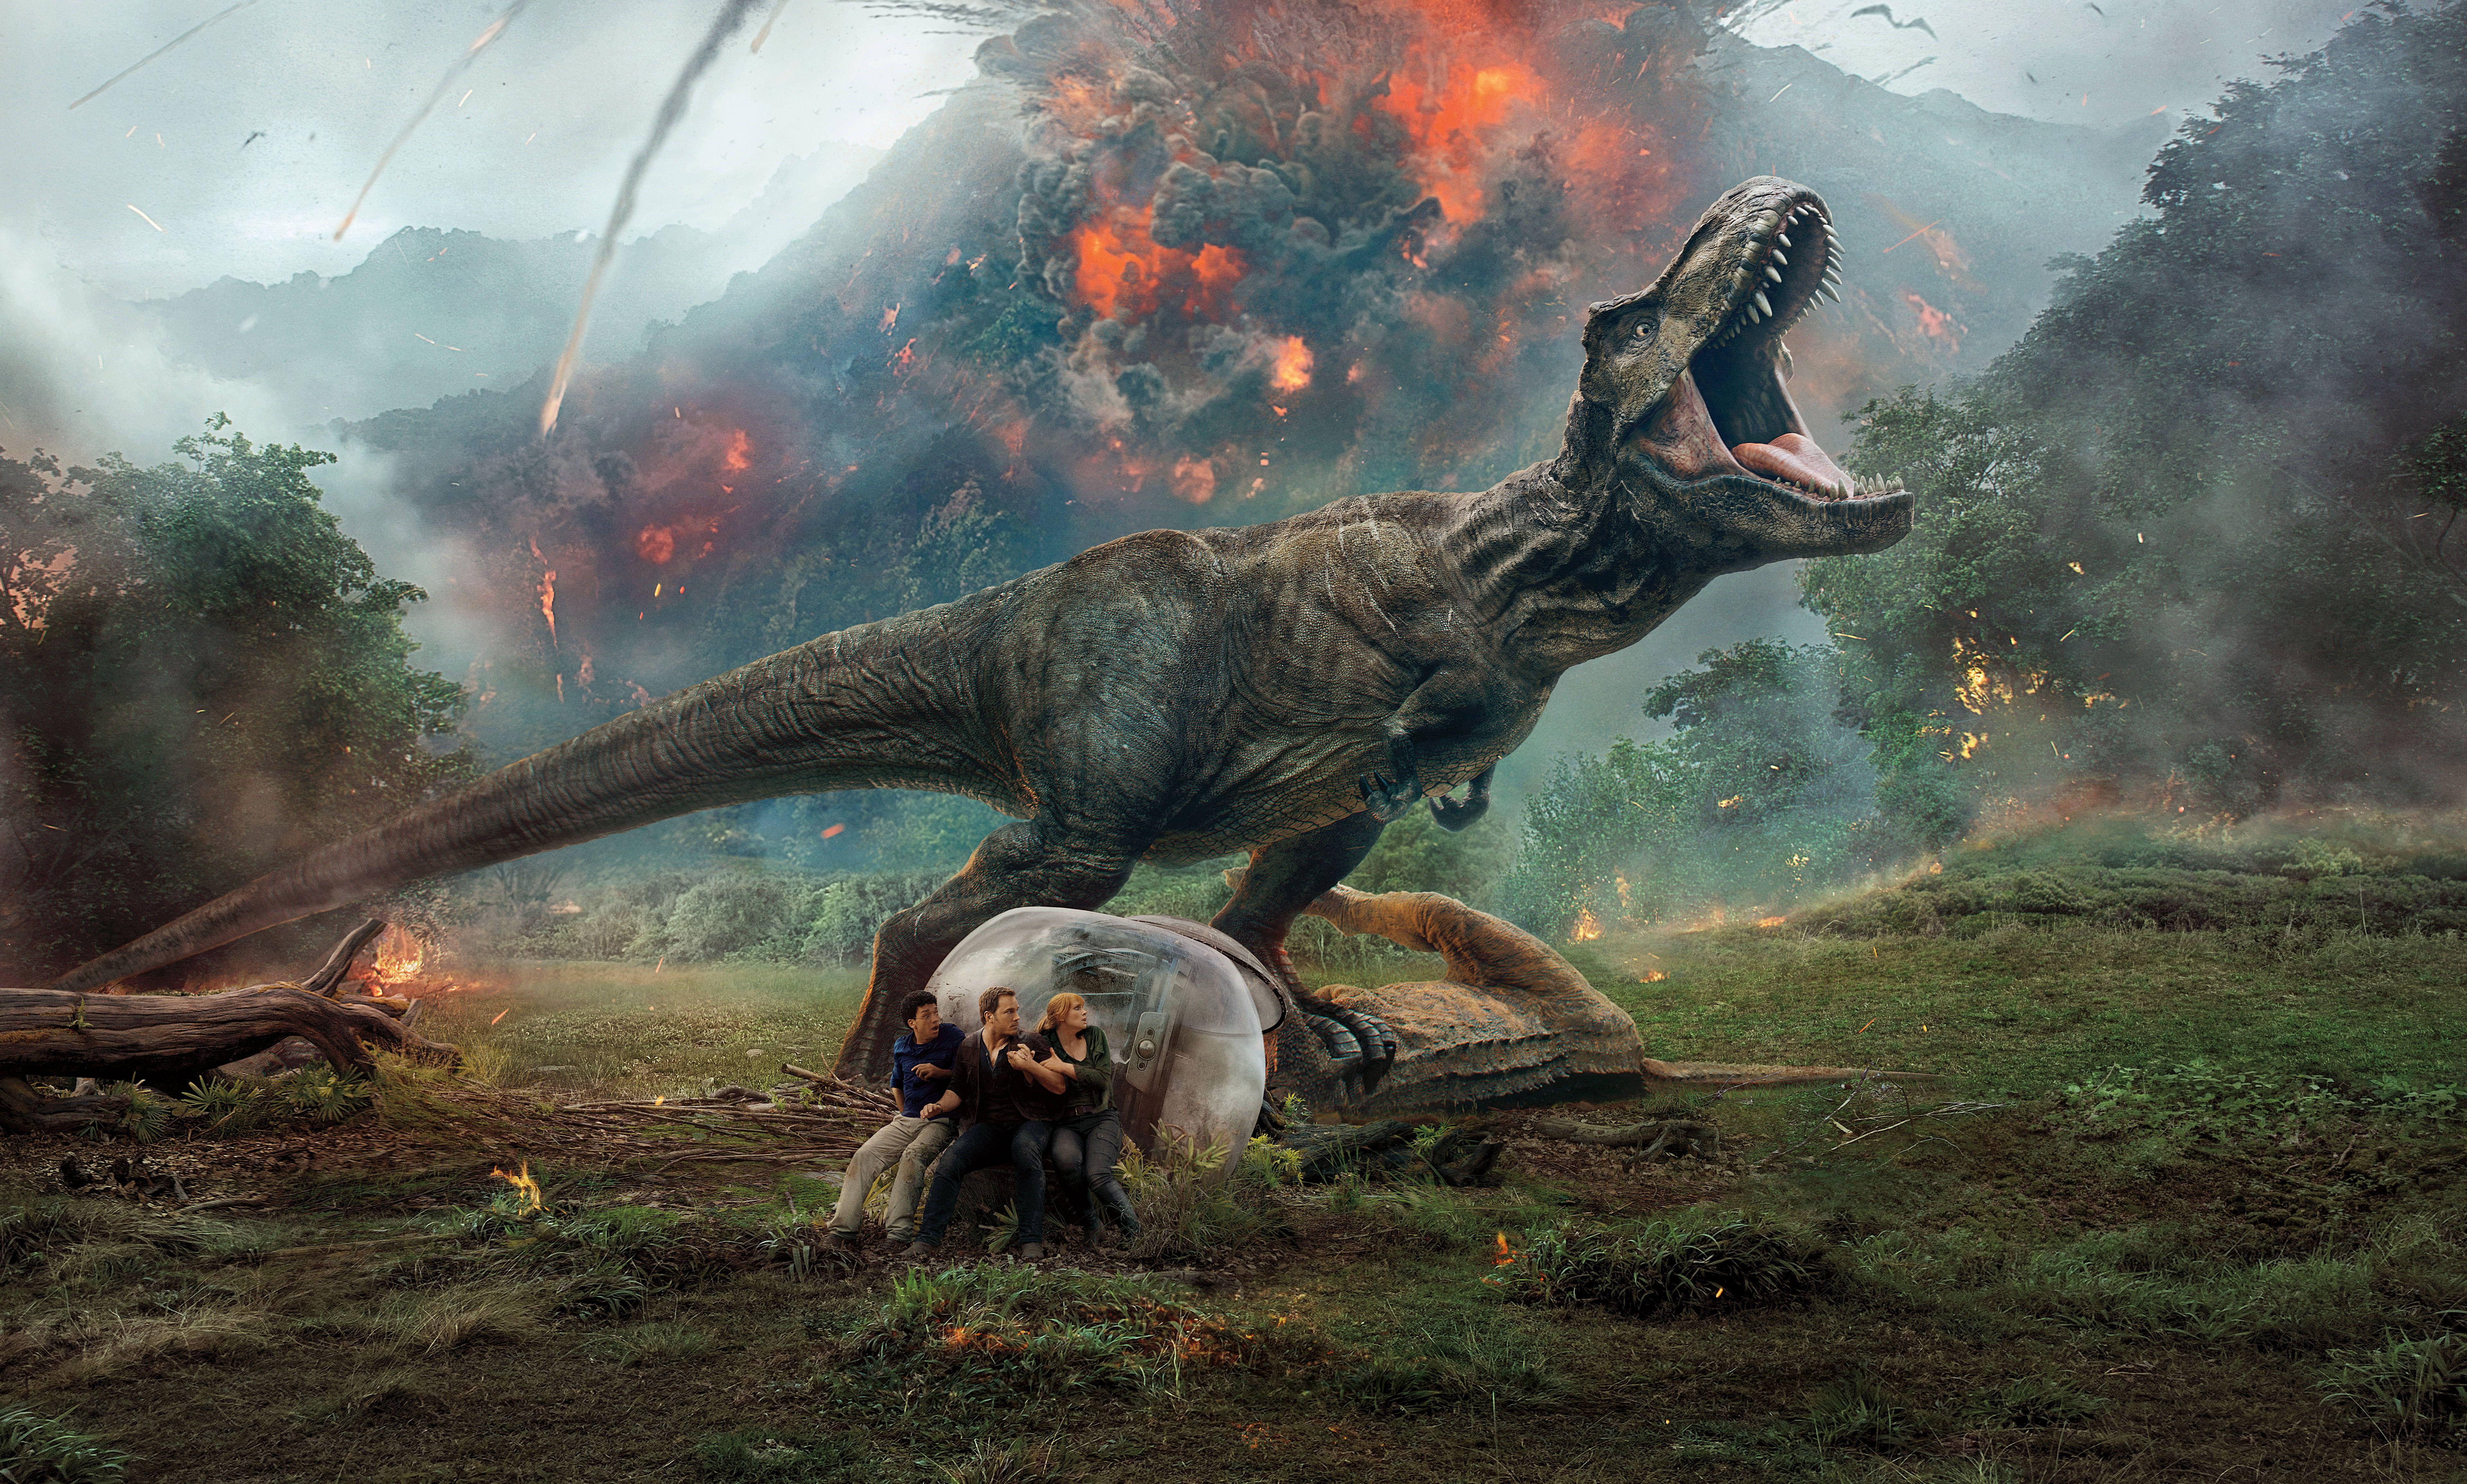 The Jurassic Park illustration HD wallpaper